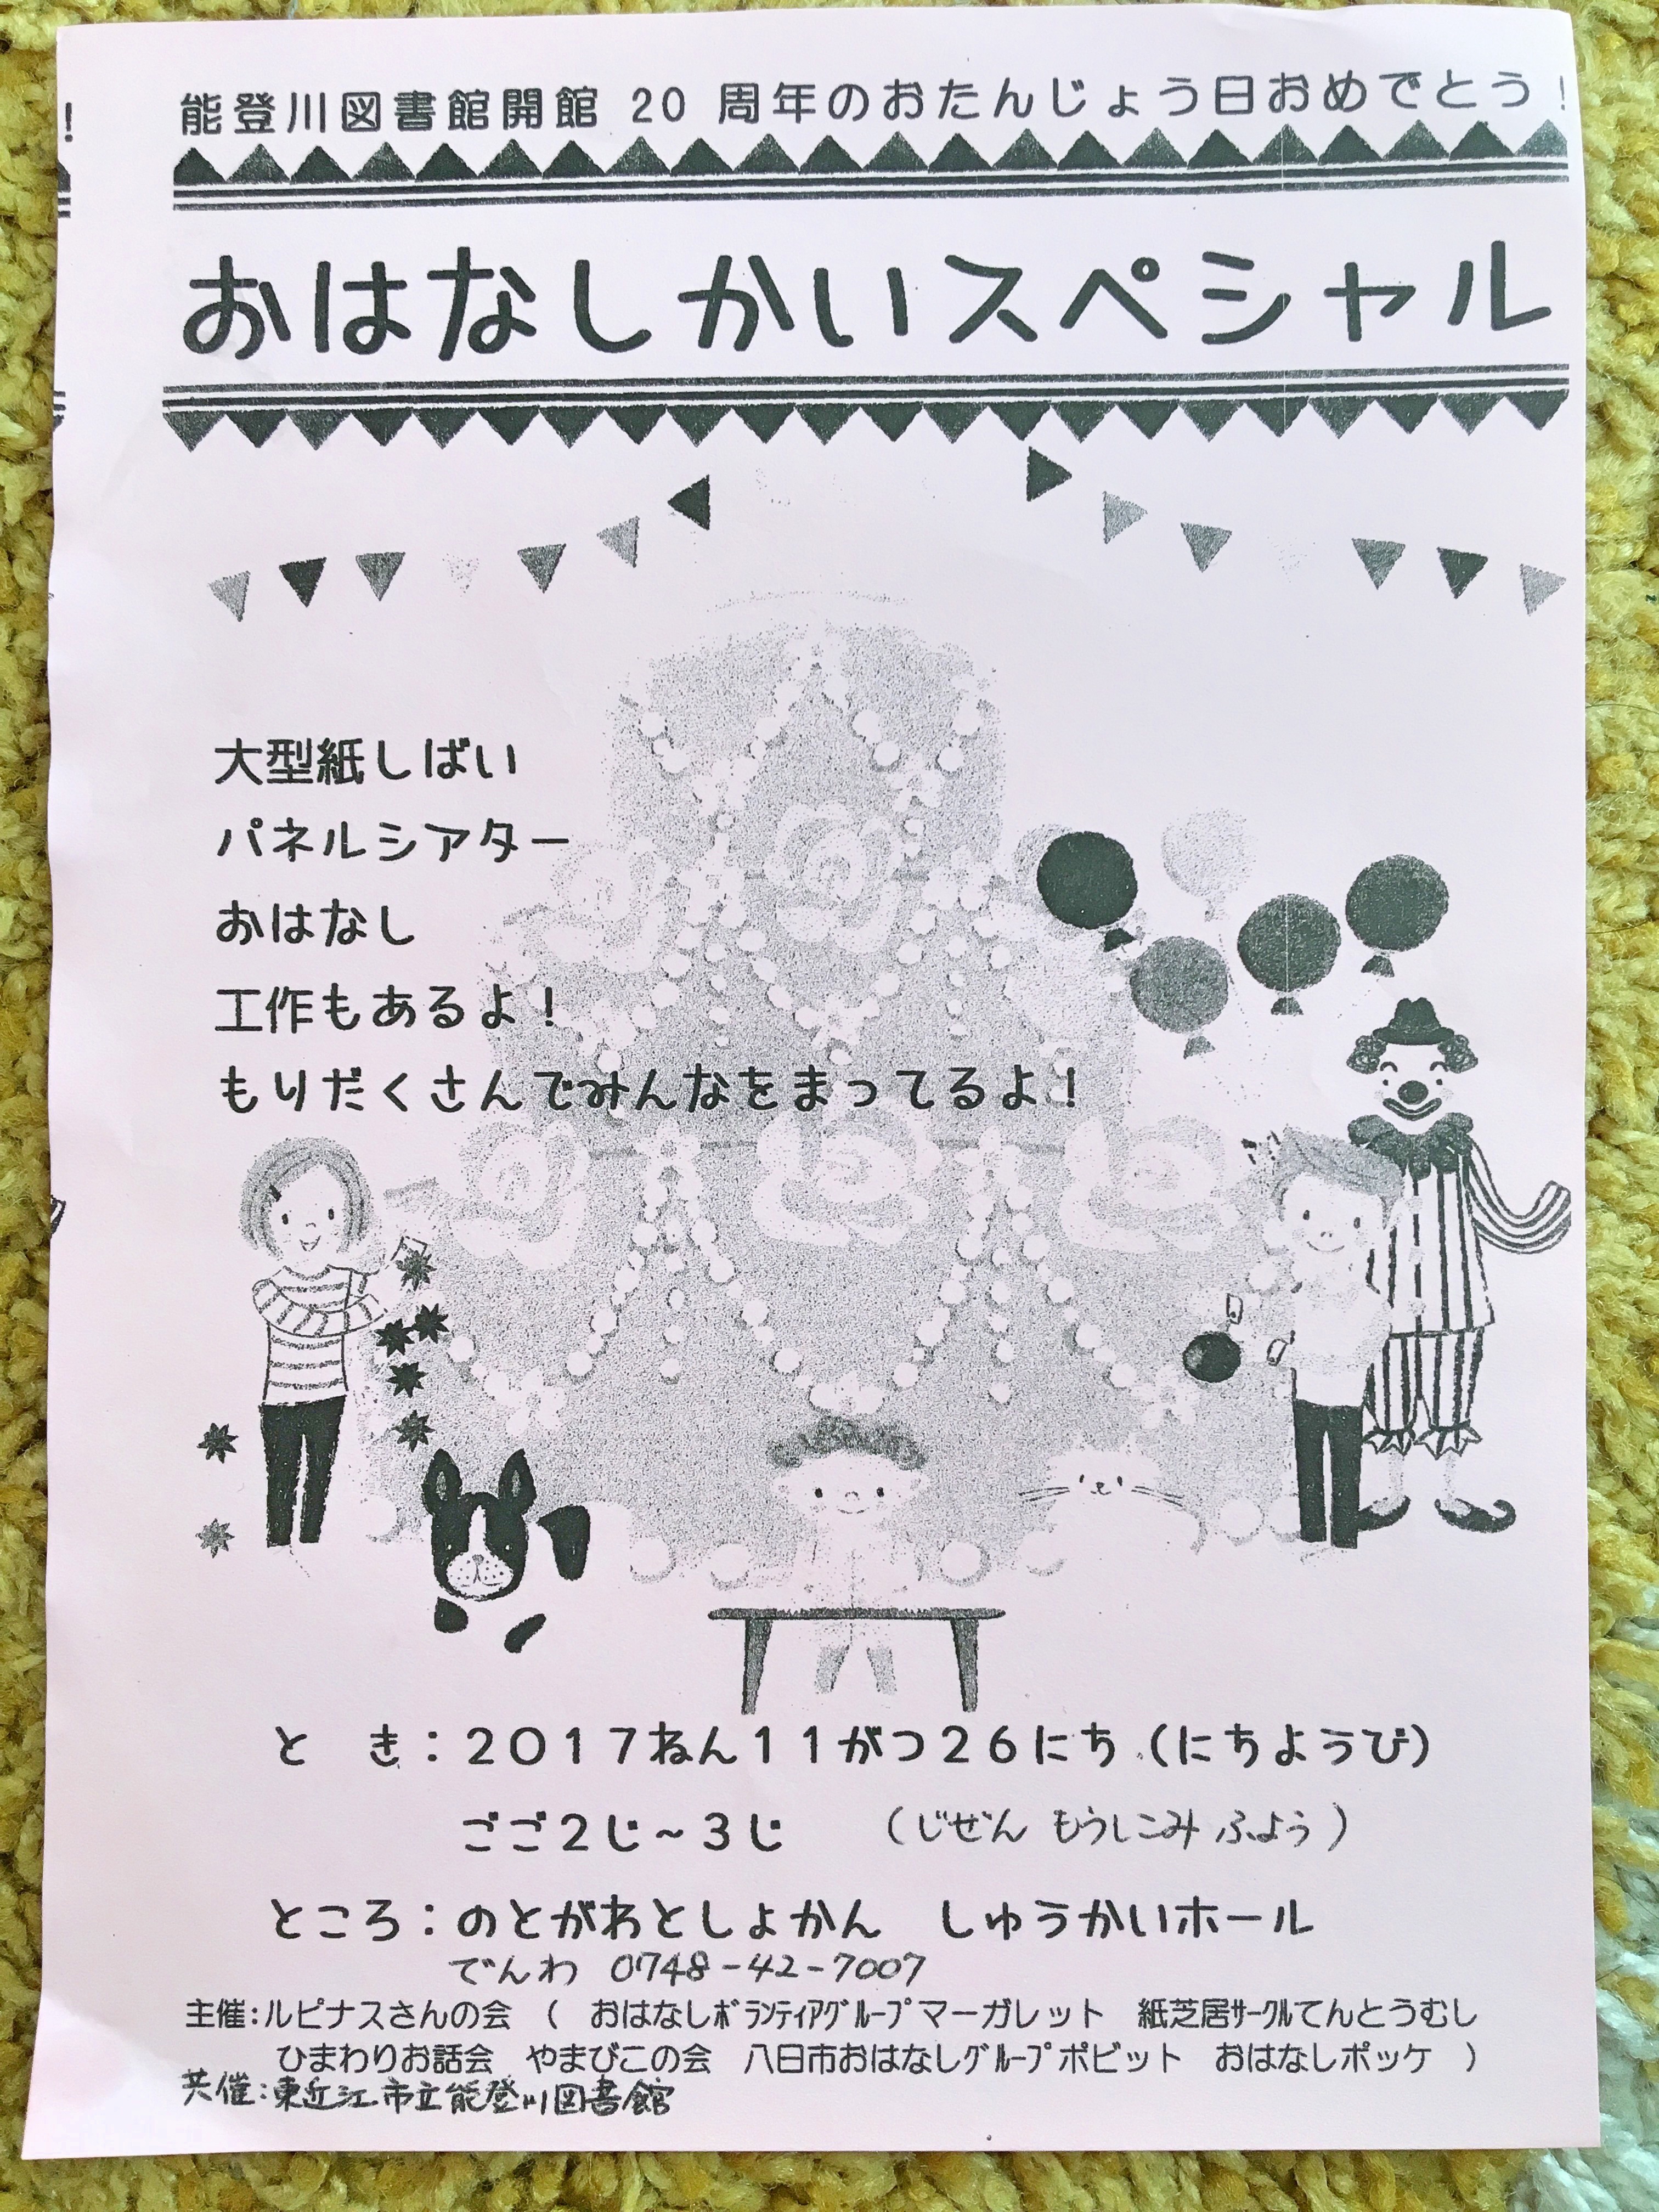 能登川図書館開館周年のお誕生日おめでとう おはなしかいスペシャルのイベントが開催されます 滋賀のママがイベント 育児 遊び 学びを発信 シガマンマ ピースマム